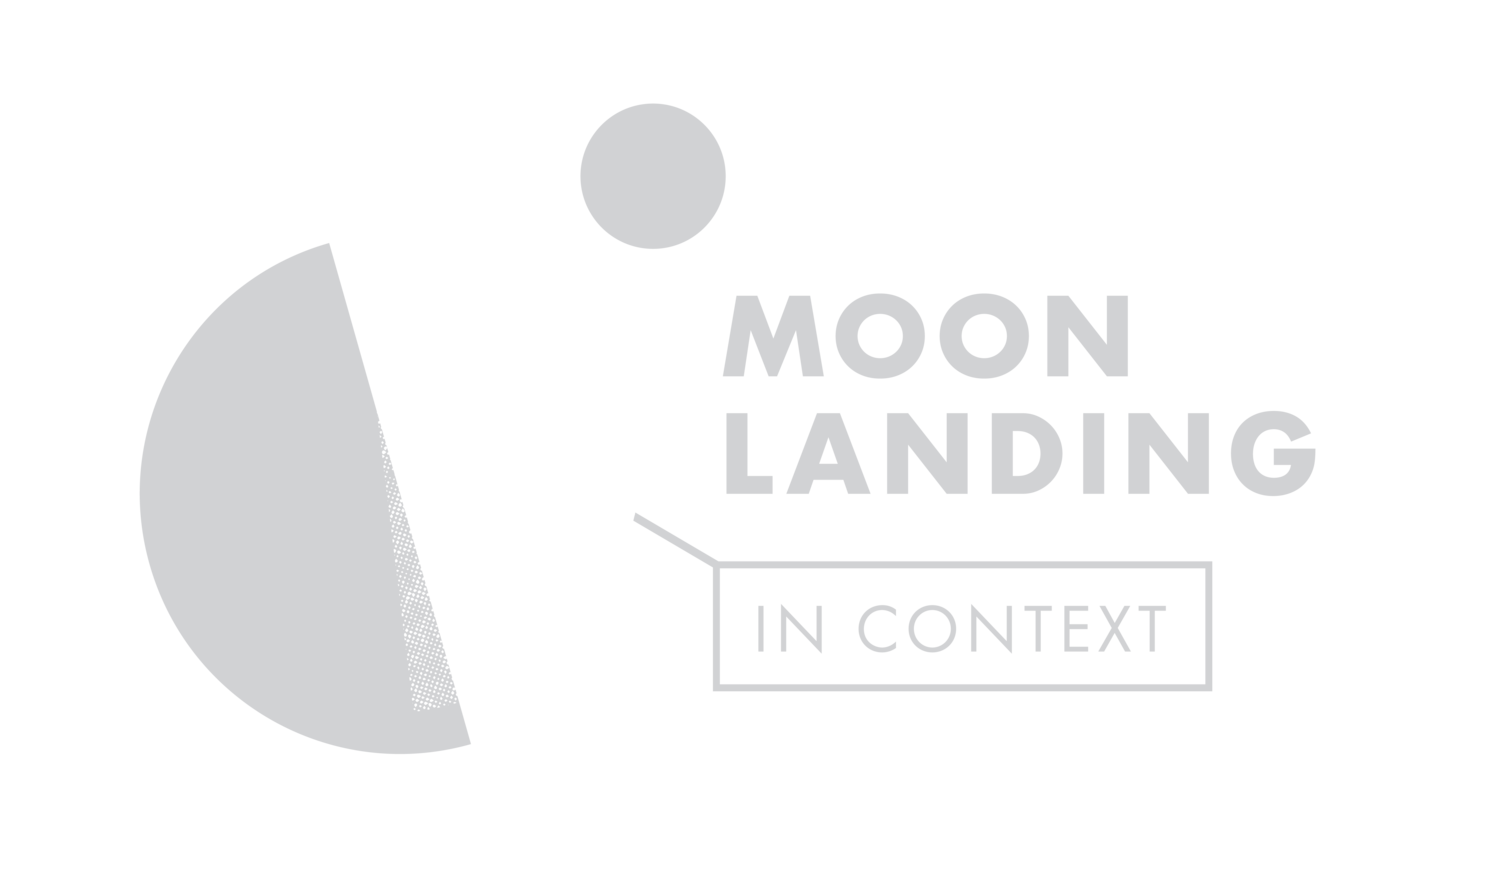 Moon Landing in Context